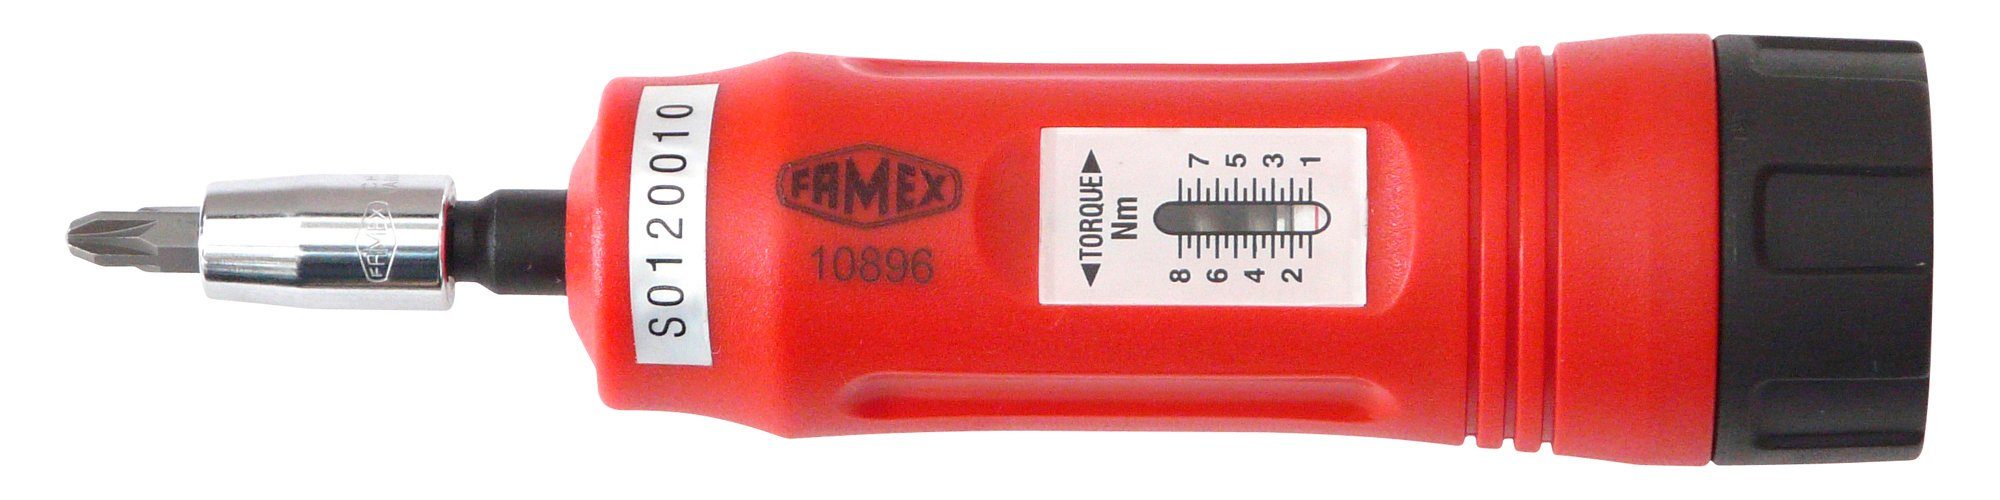 FAMEX 1-8 Drehmomentschlüssel 10896, Nm